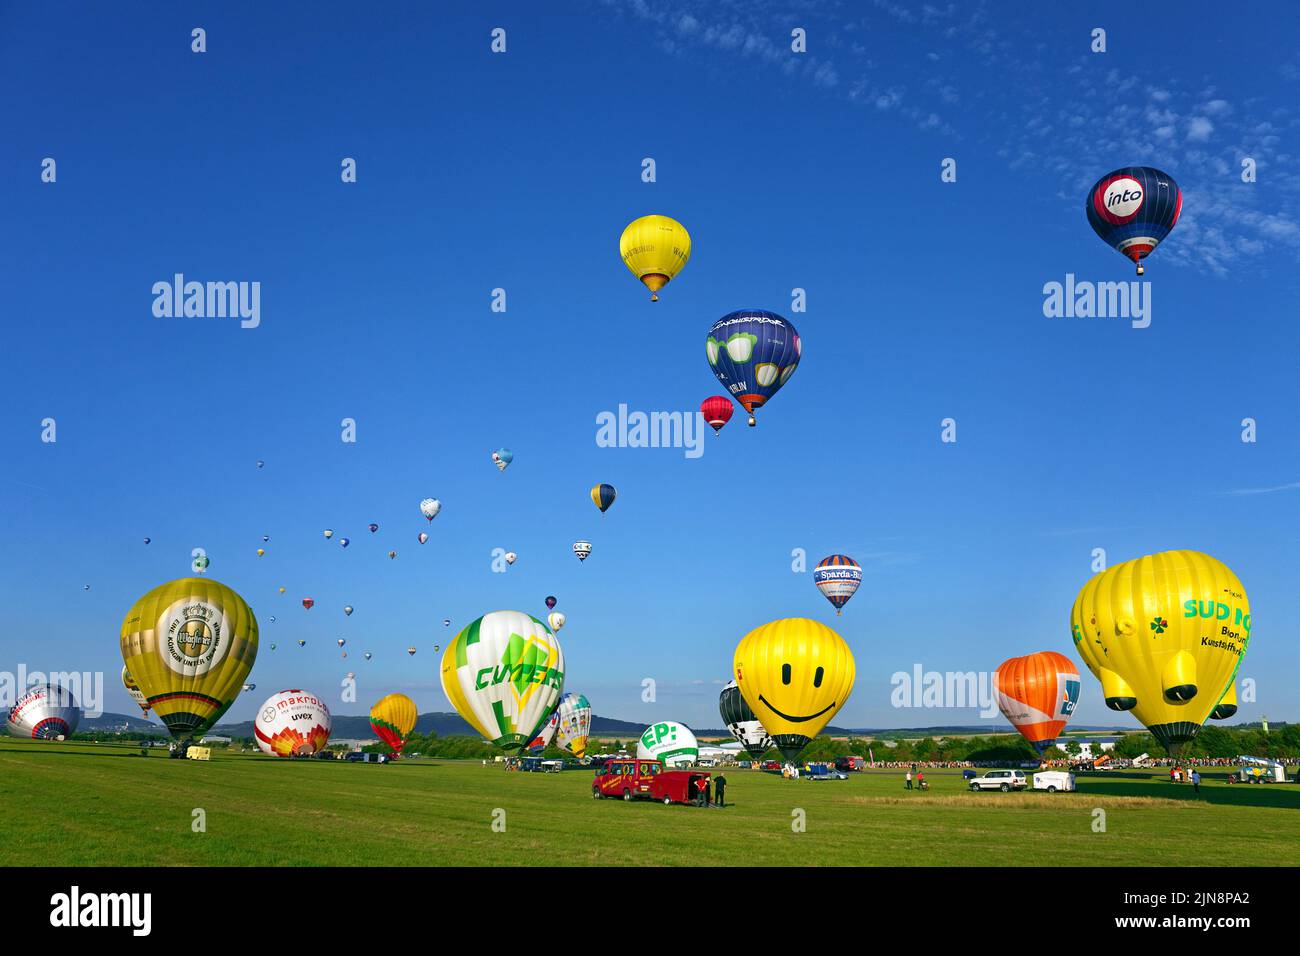 Préparation et démarrage de ballons à air chaud, Mosel-ballon-Fiesta à l'aéroport de Trèves-Foehren, Rhénanie-Palatinat, Allemagne, Europe Banque D'Images